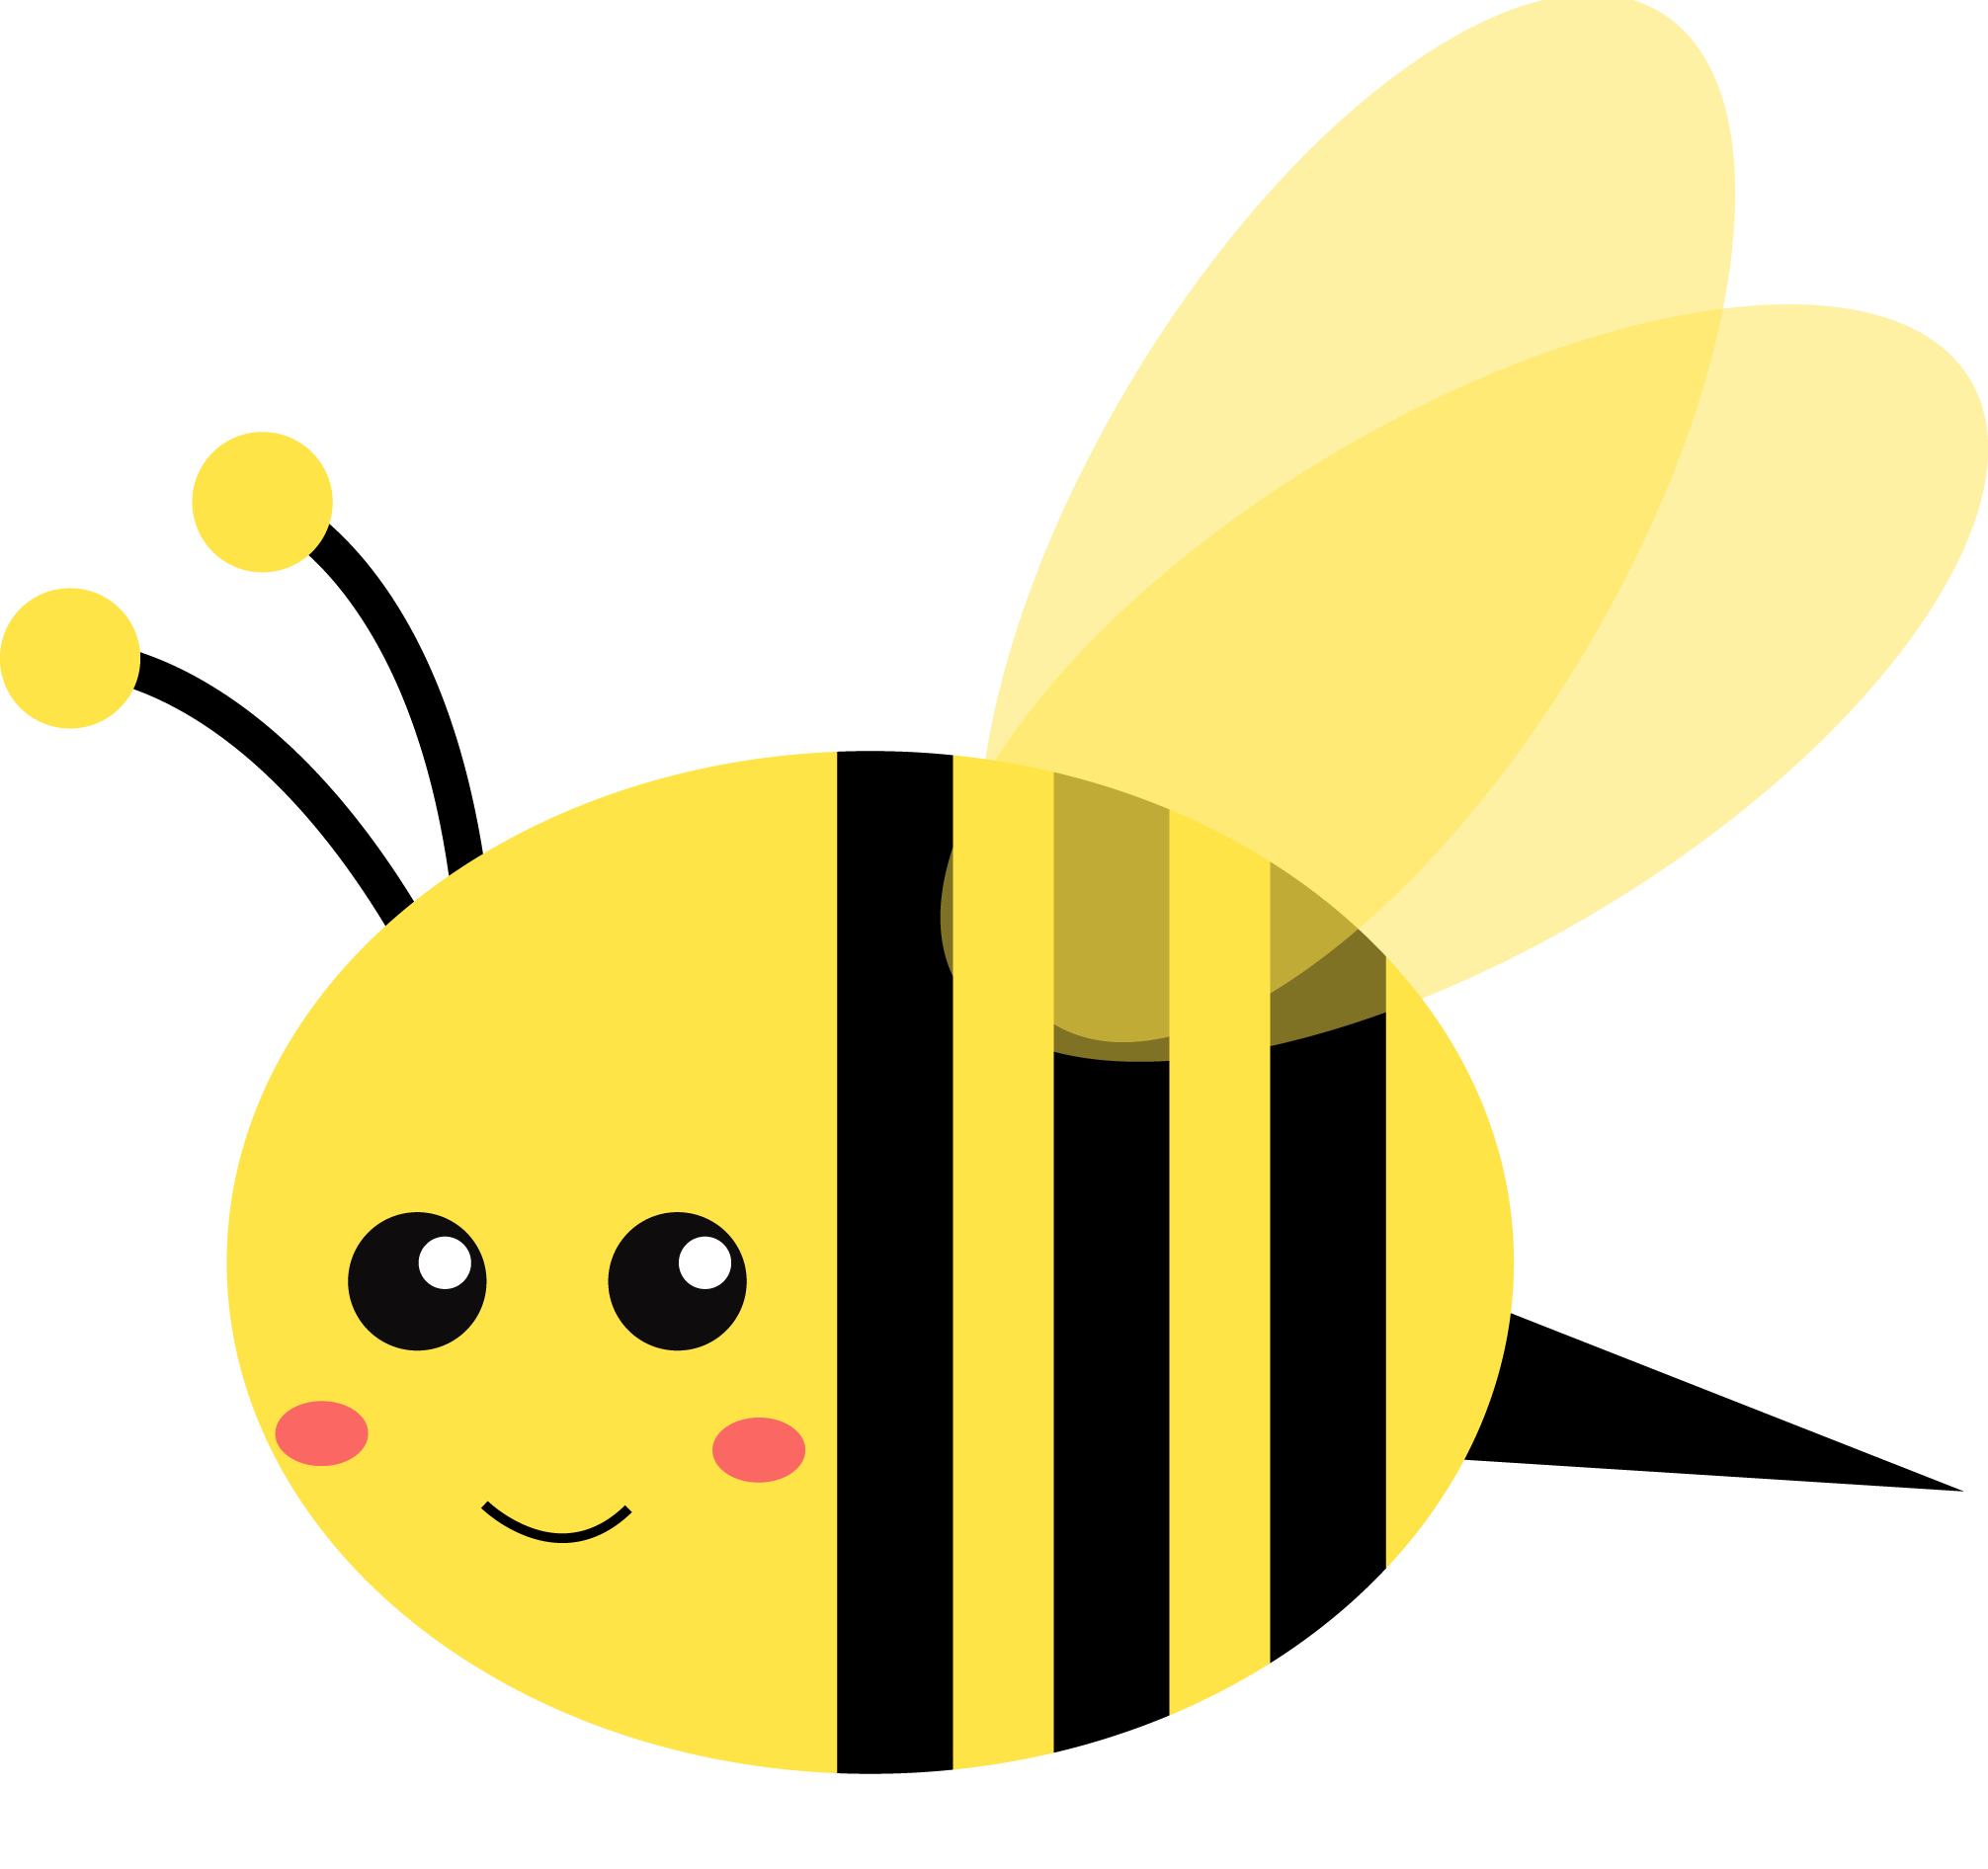 मधुमक्खी